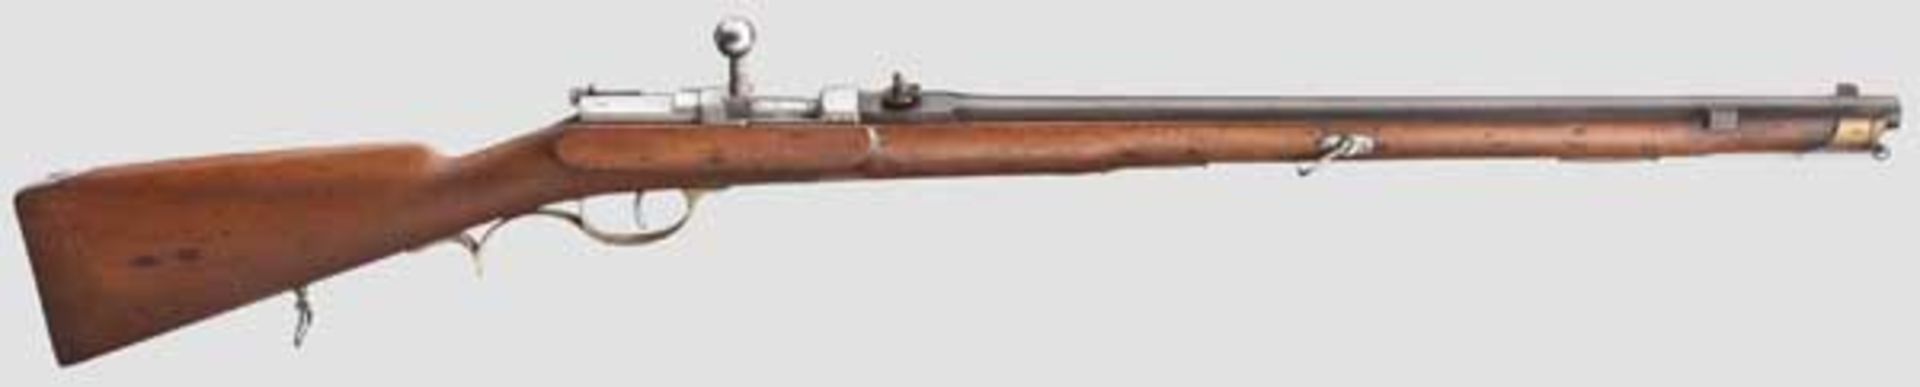 Zündnadel-Pioniergewehr M 1869 Kaliber 15,3 mm, Nummer 5054, nummerngleich (inkl. Schrauben).